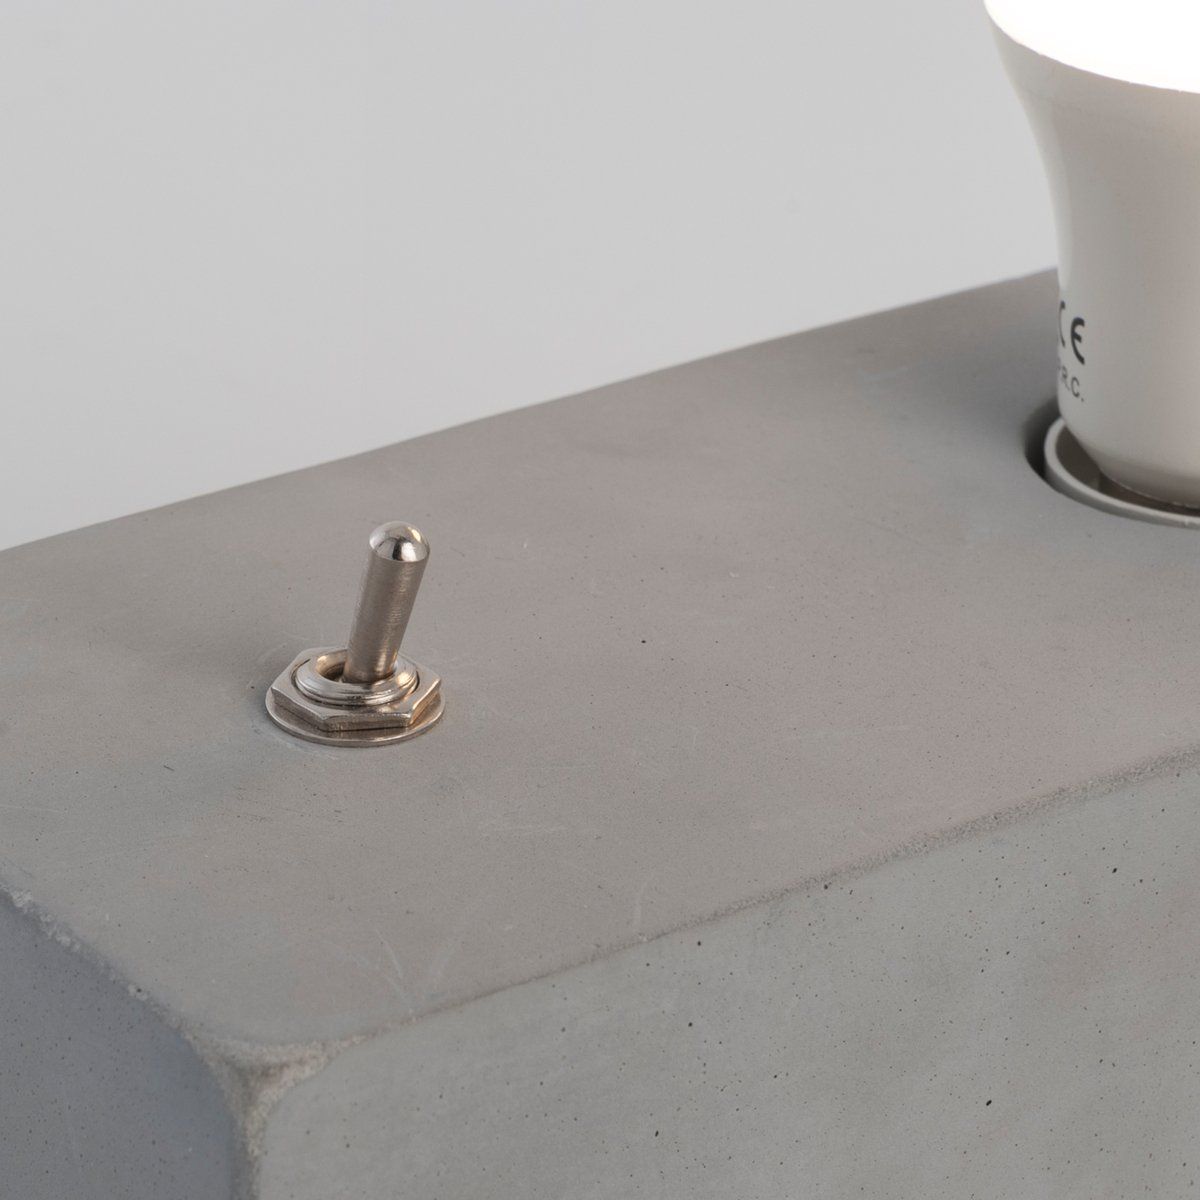 Lampe de table industrielle CONCRETE grise en béton